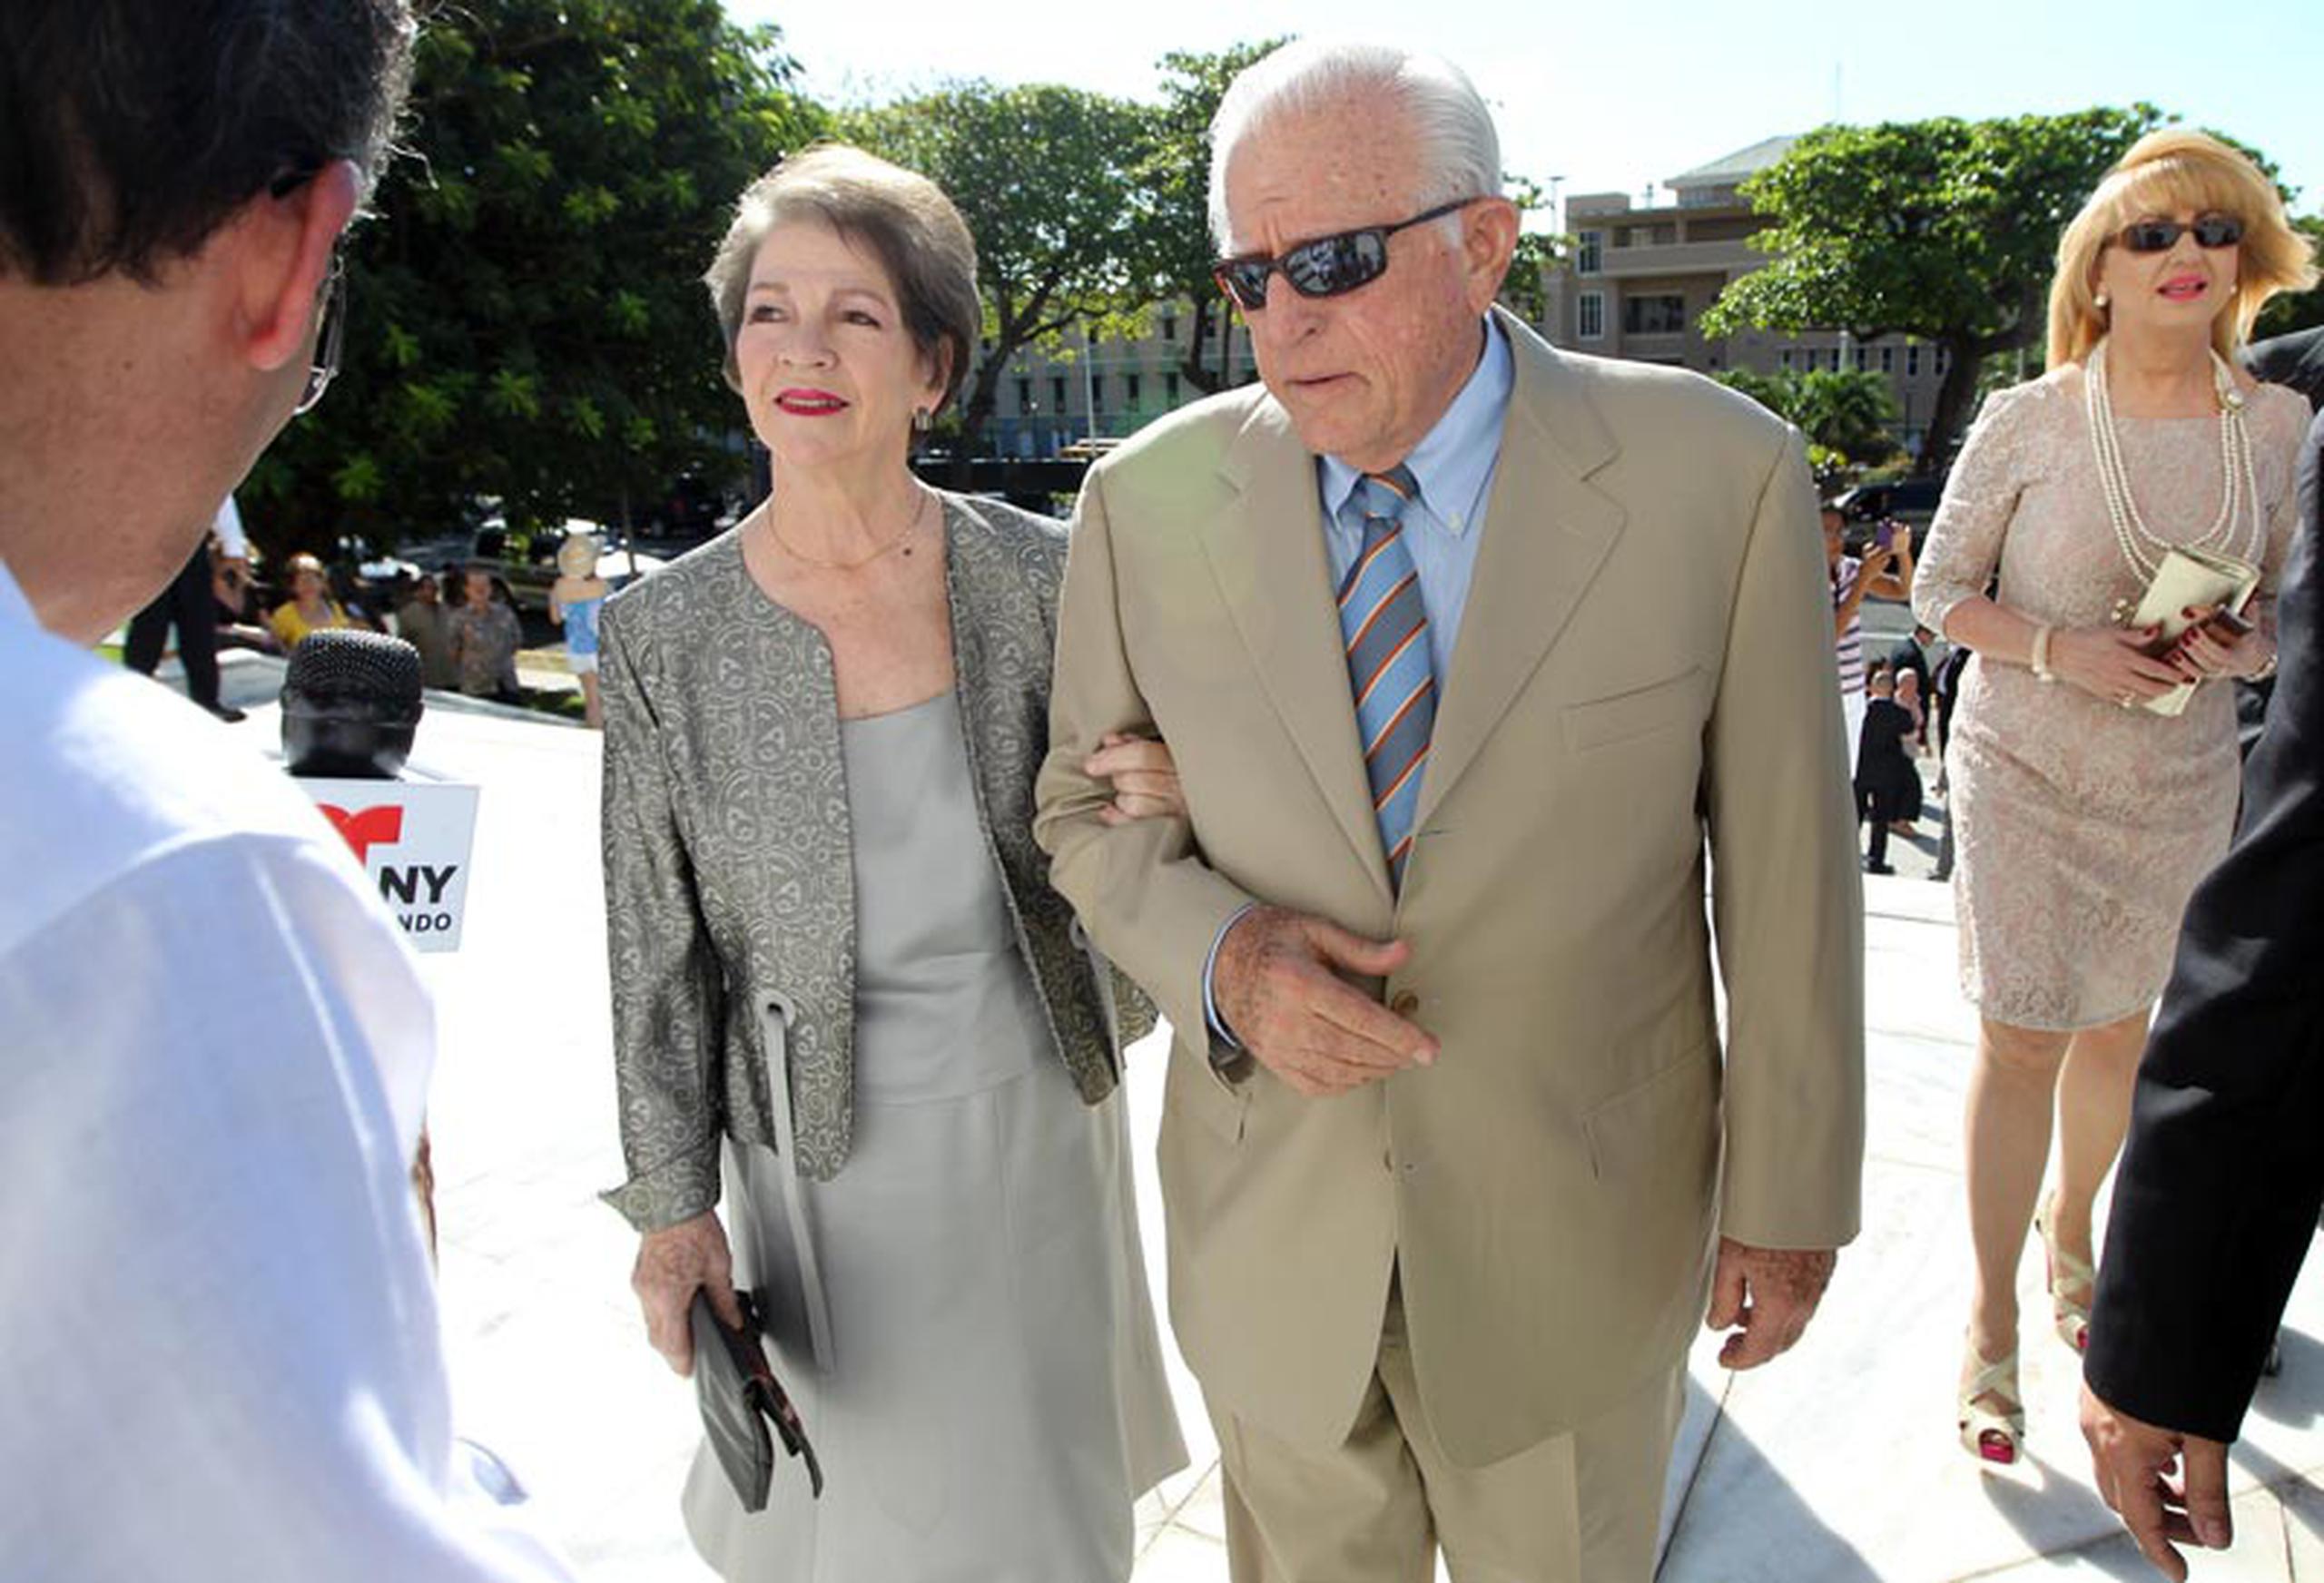 El ex gobernador Carlos Romero Barceló y su esposa Kate Donnelly.  (juan.martinez@gfrmedia.com)